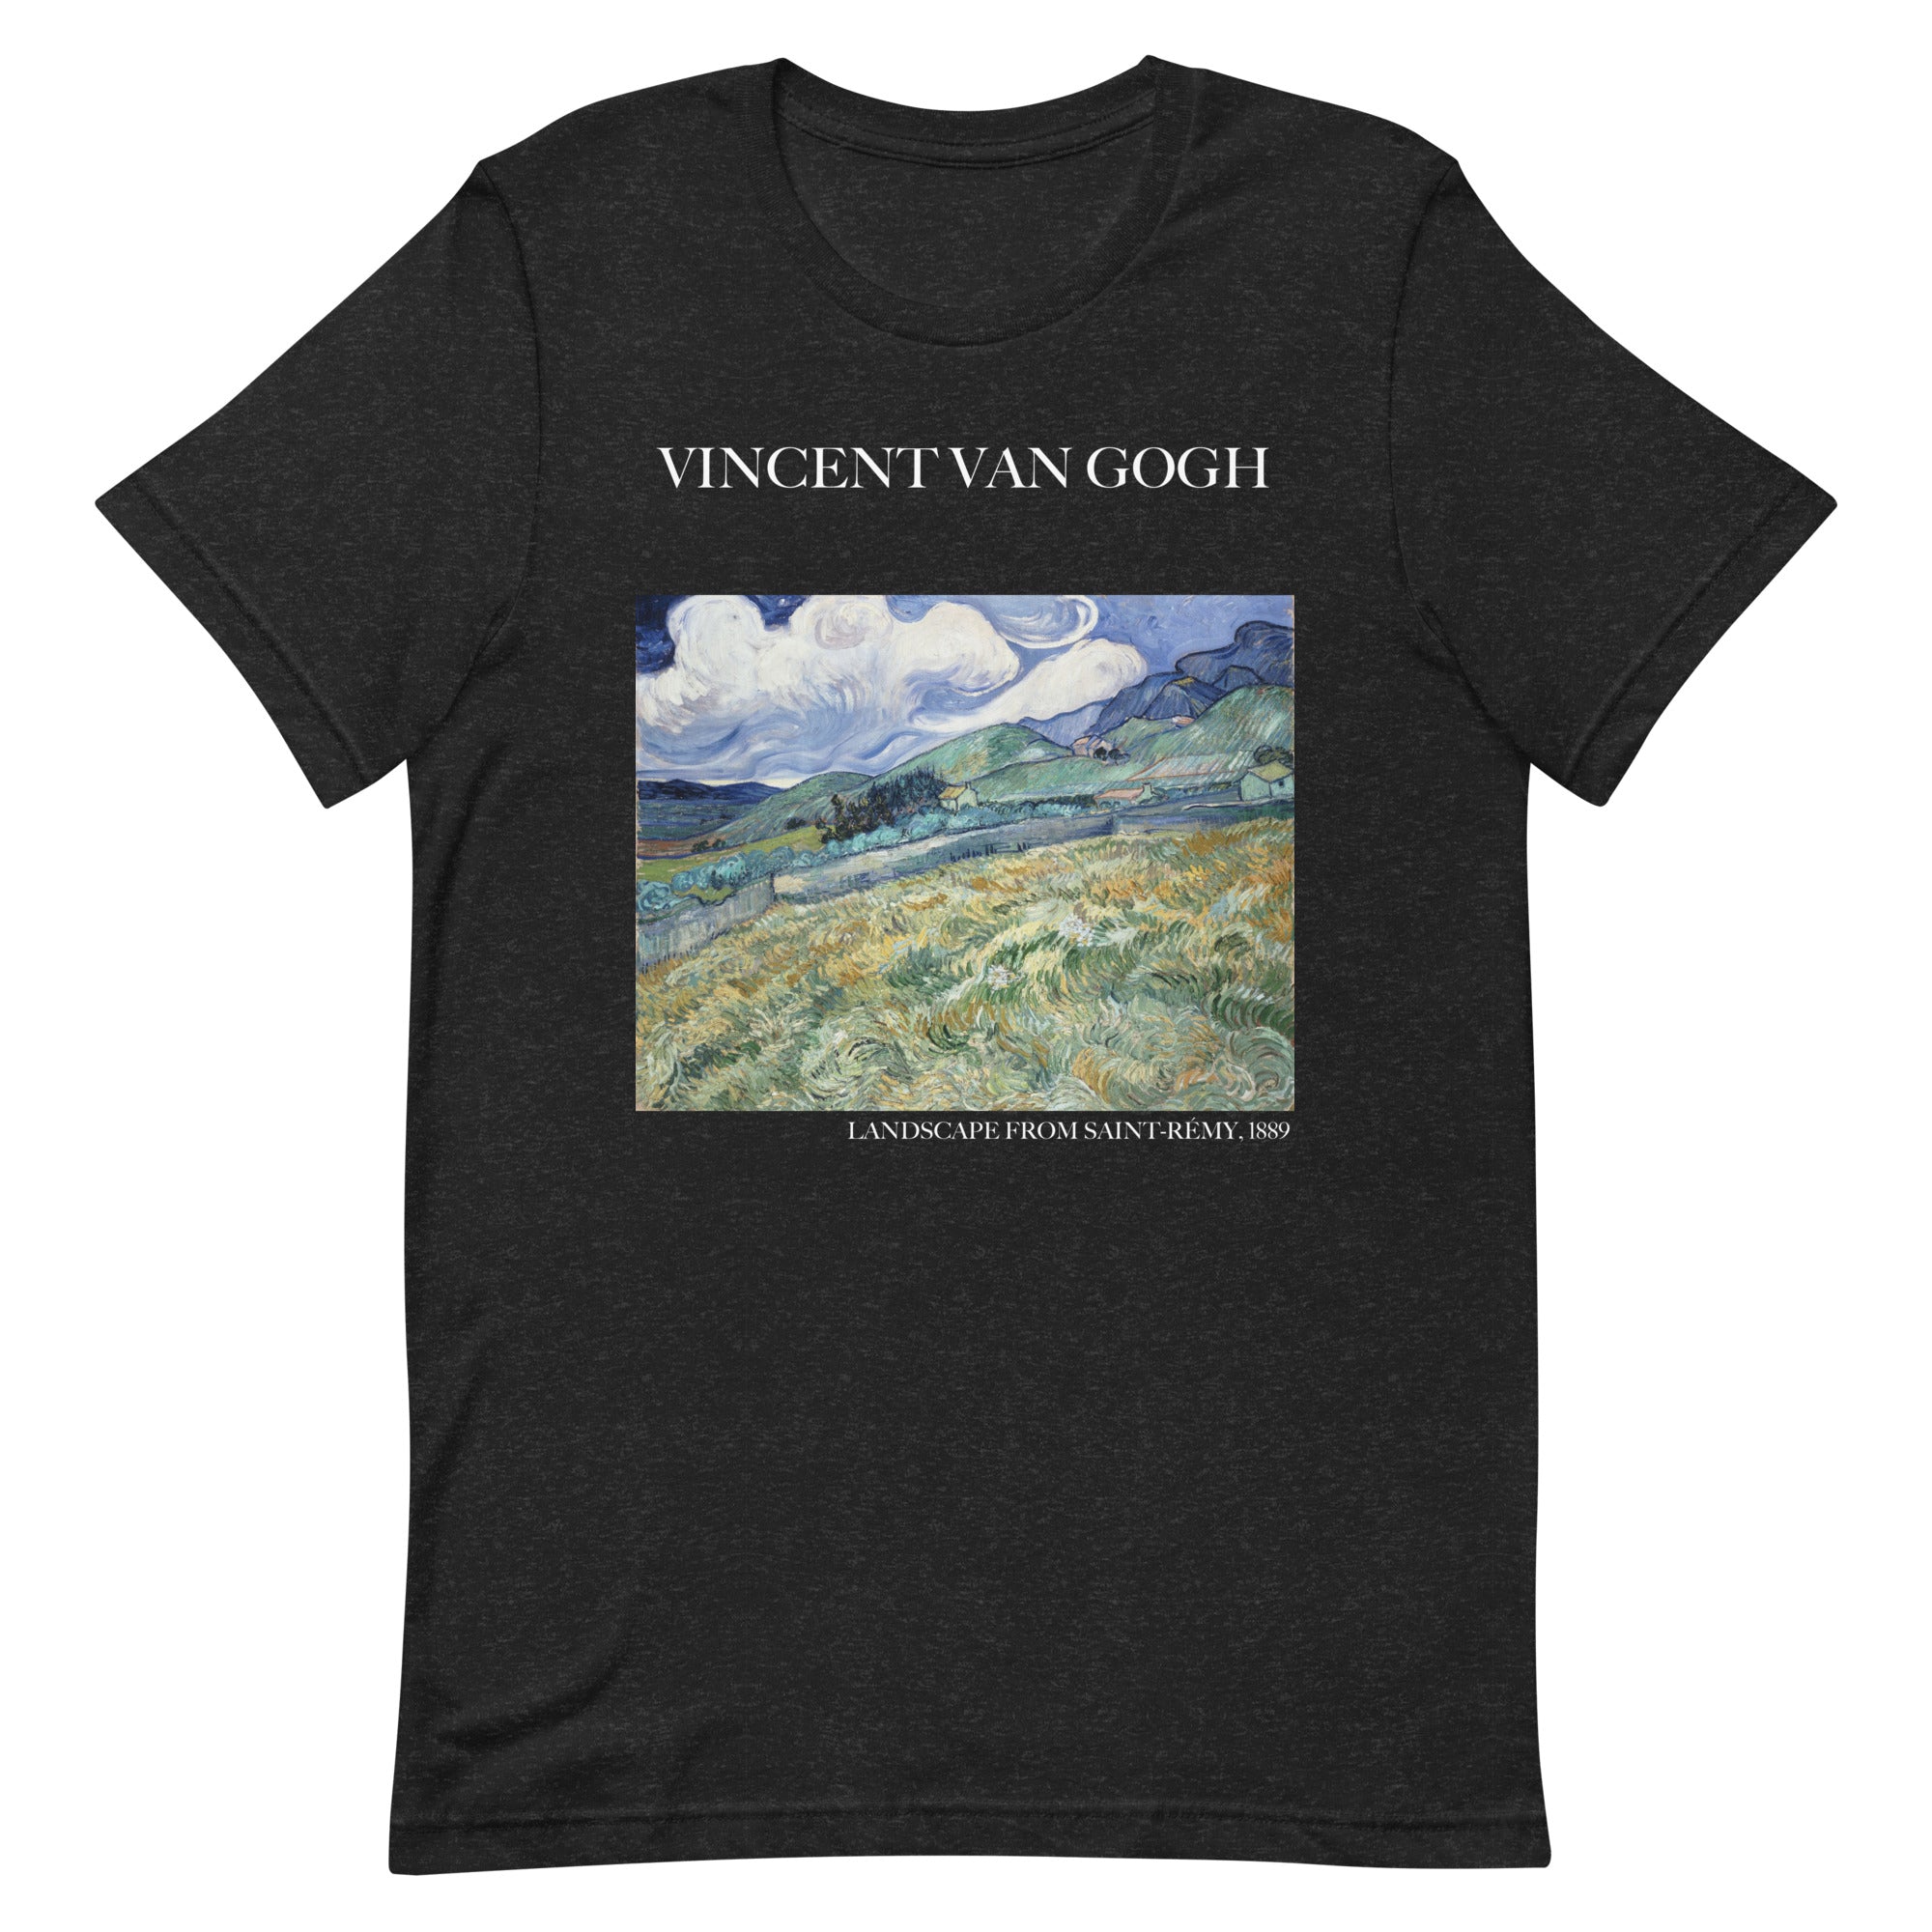 Vincent van Gogh 'Landscape from Saint-Rémy' Famous Painting T-Shirt | Unisex Classic Art Tee